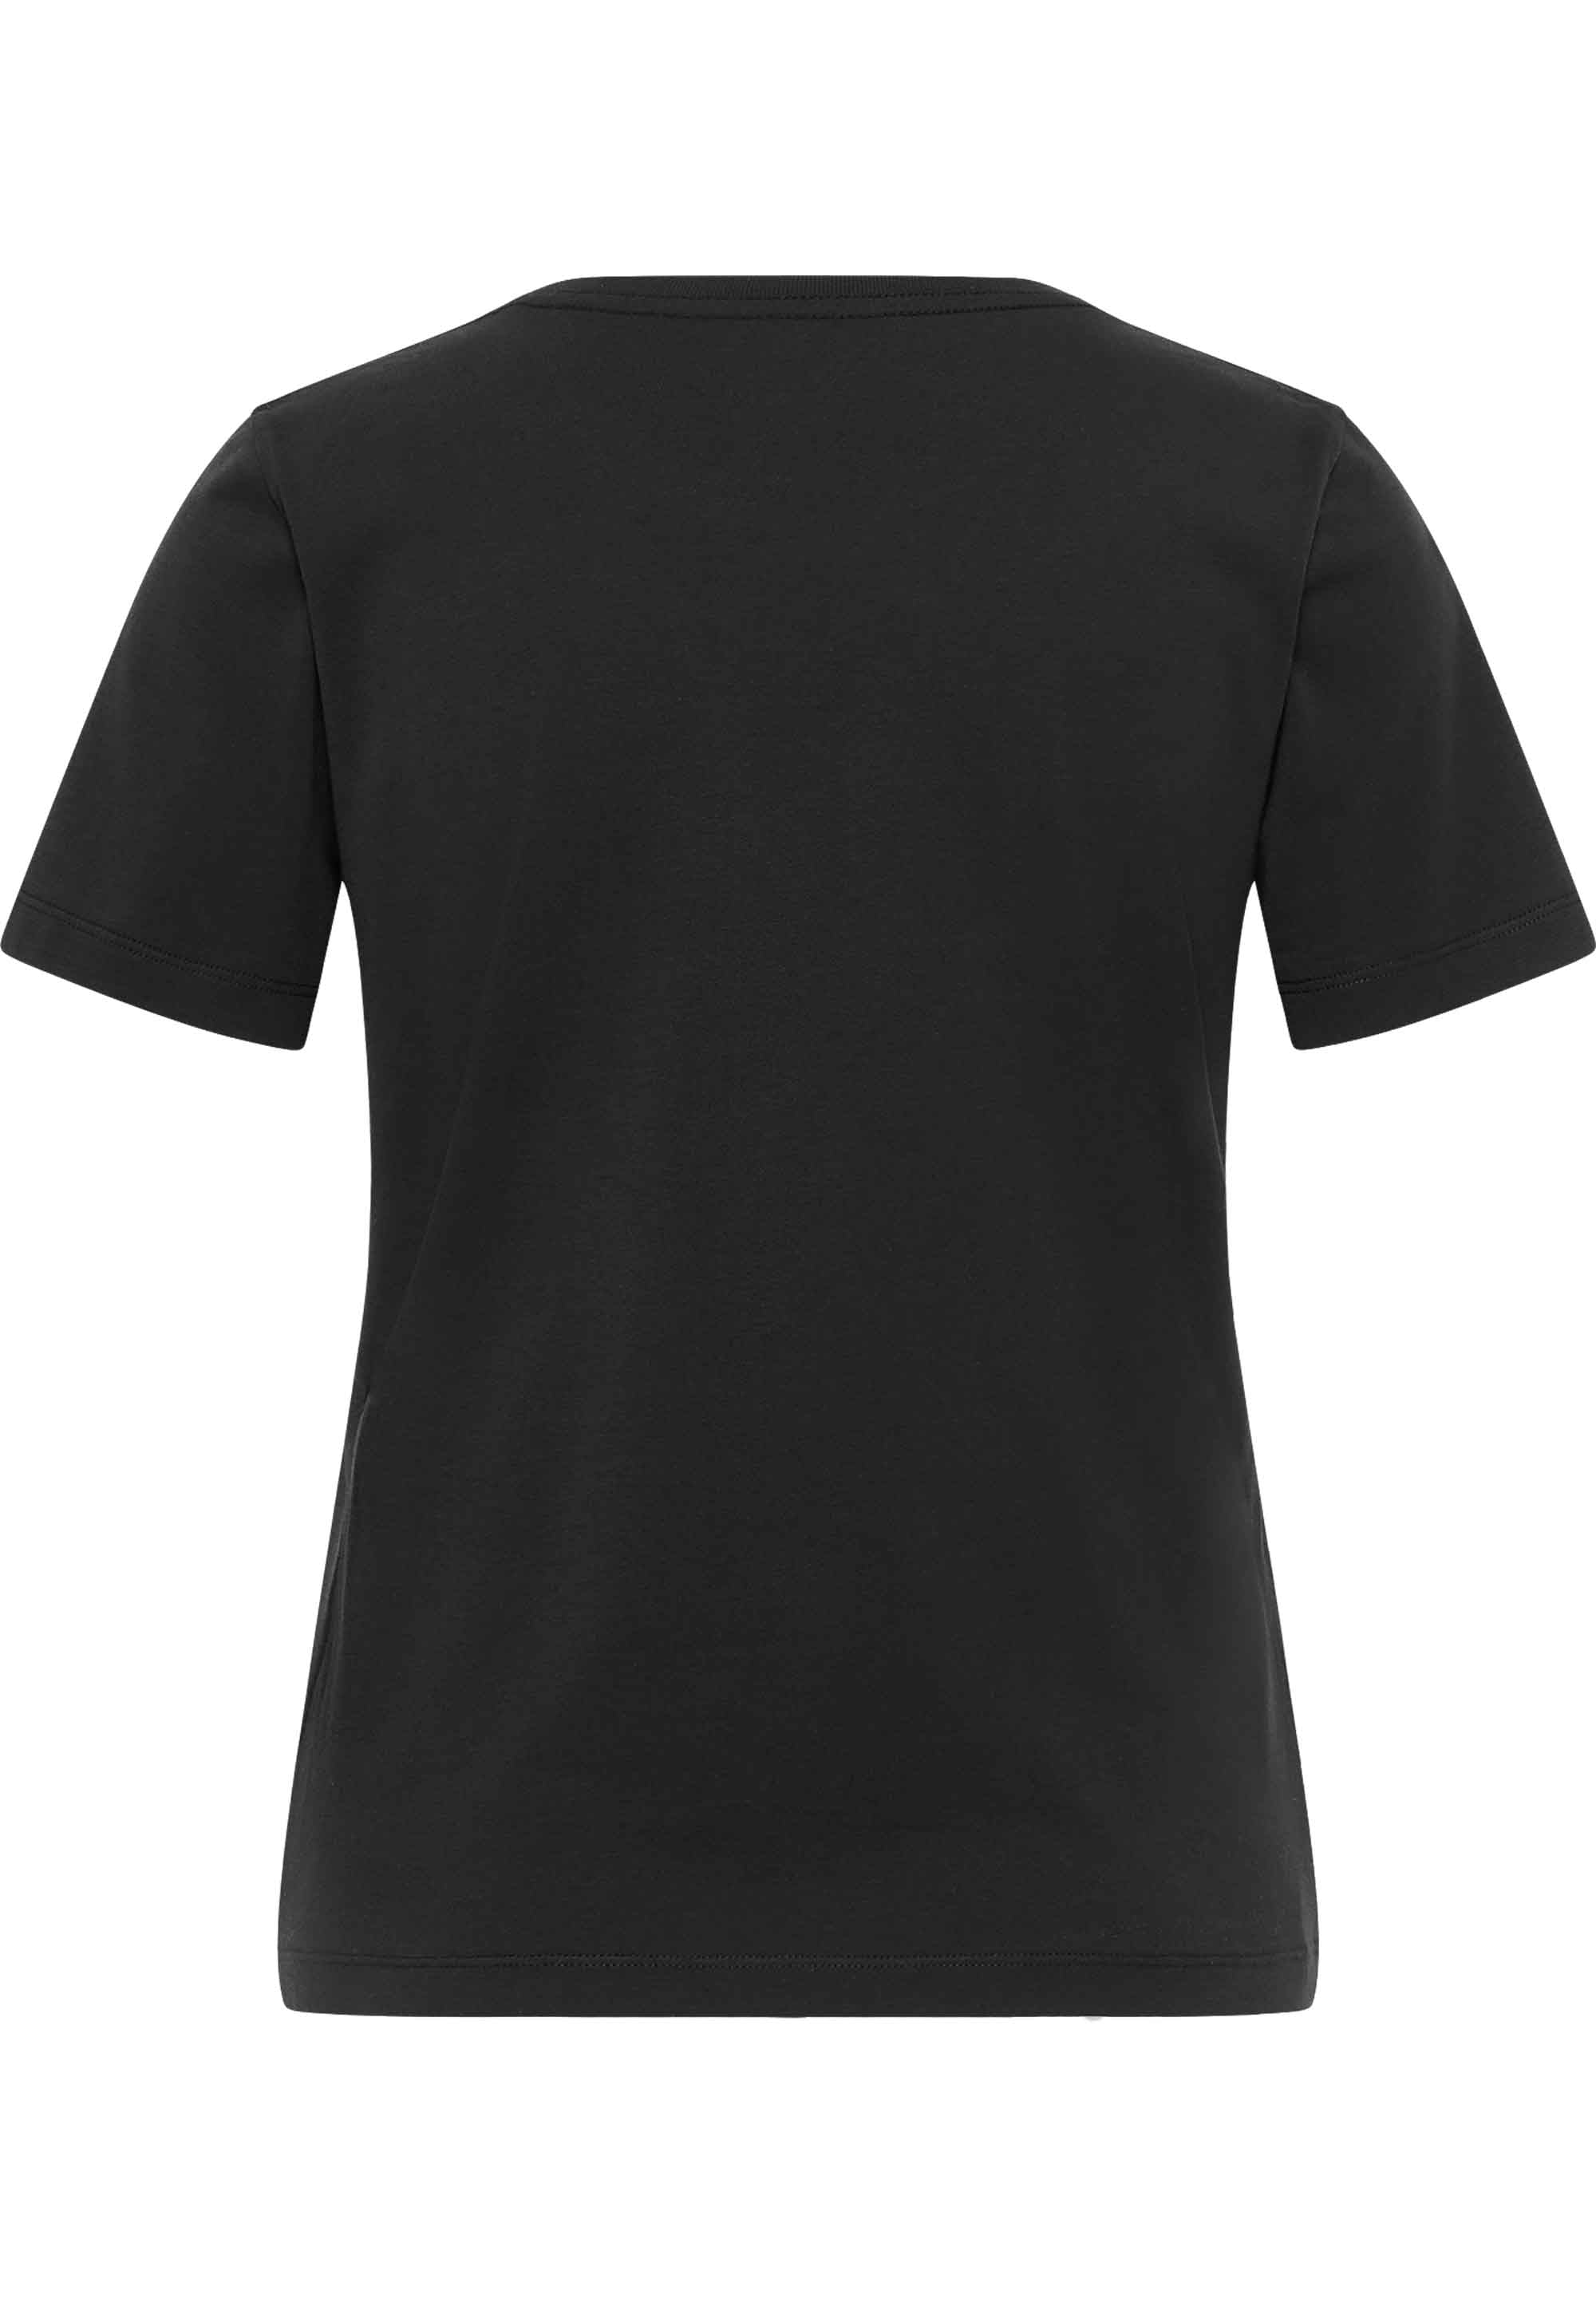 SOMWR MANGROVE ROOT TEE T-Shirt BLK000